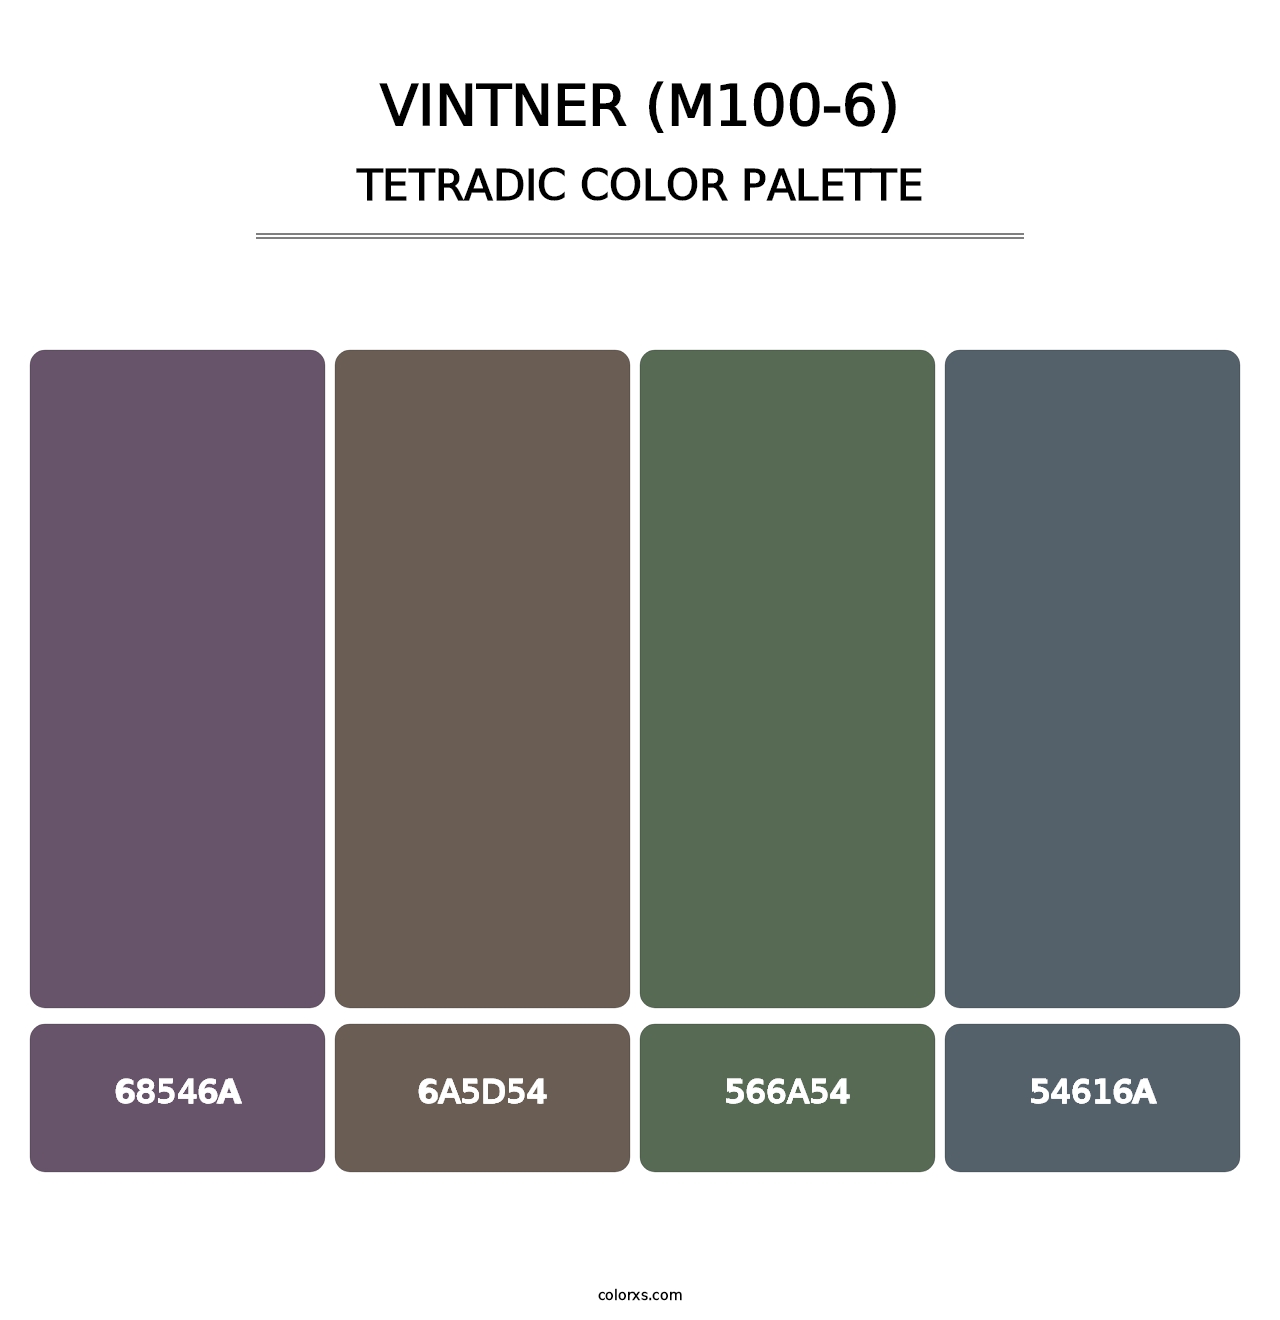 Vintner (M100-6) - Tetradic Color Palette